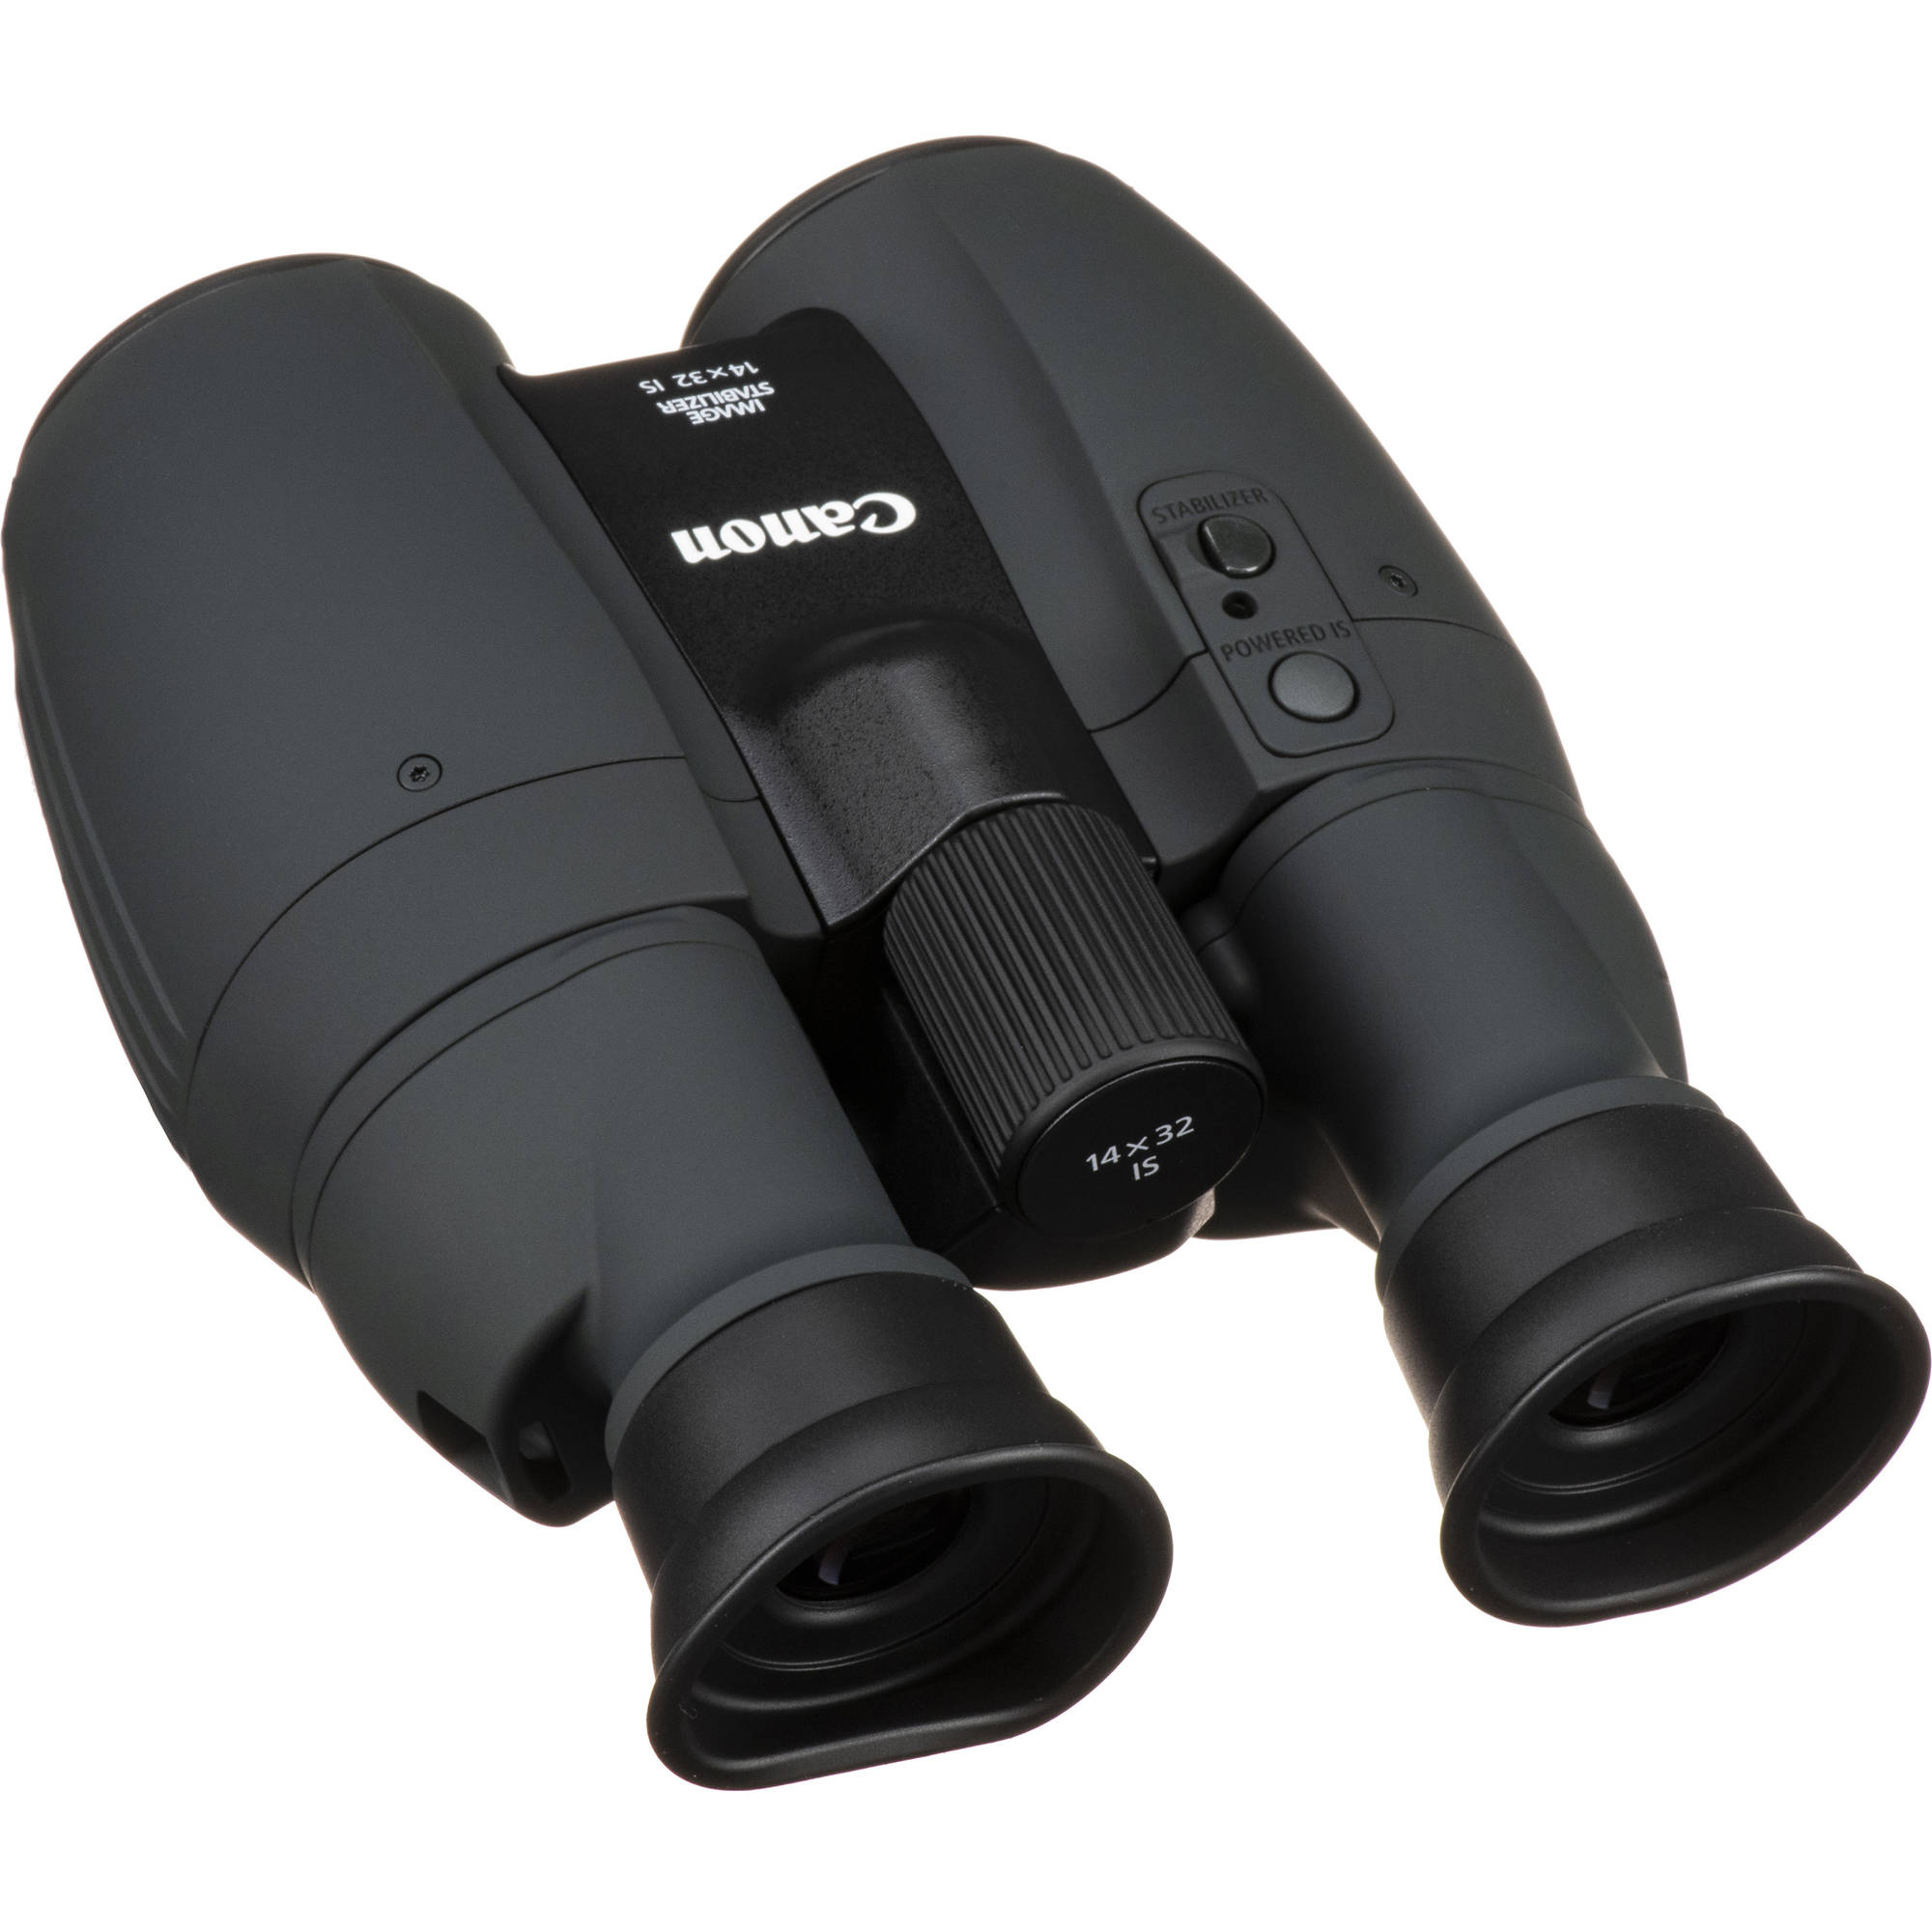 Canon 14x32 es binoculares estabilizados de imagen